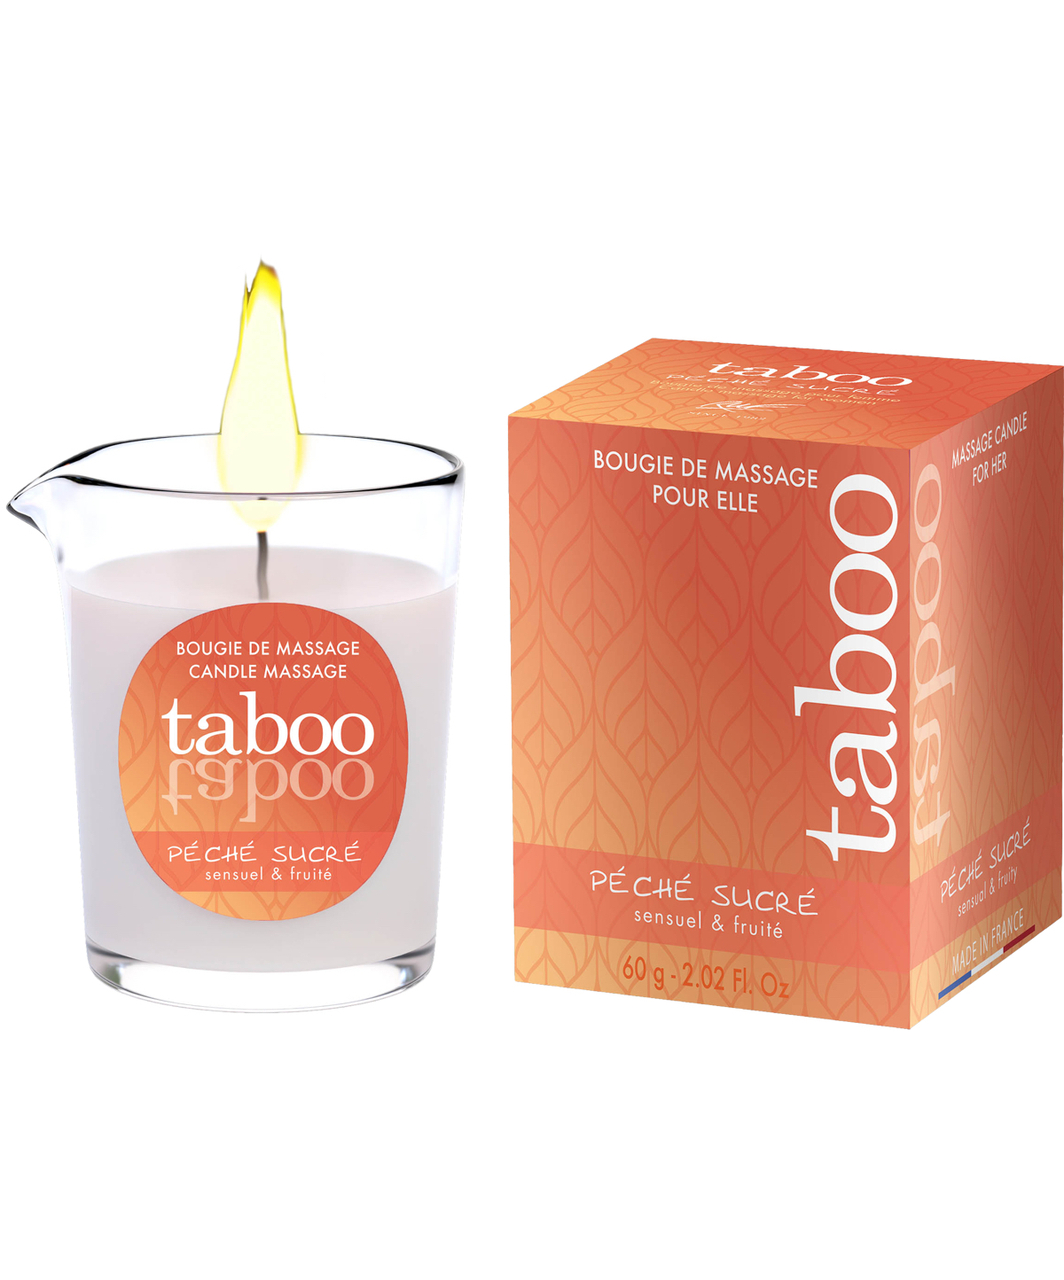 Taboo Péché Sucré массажная свеча (60 г)